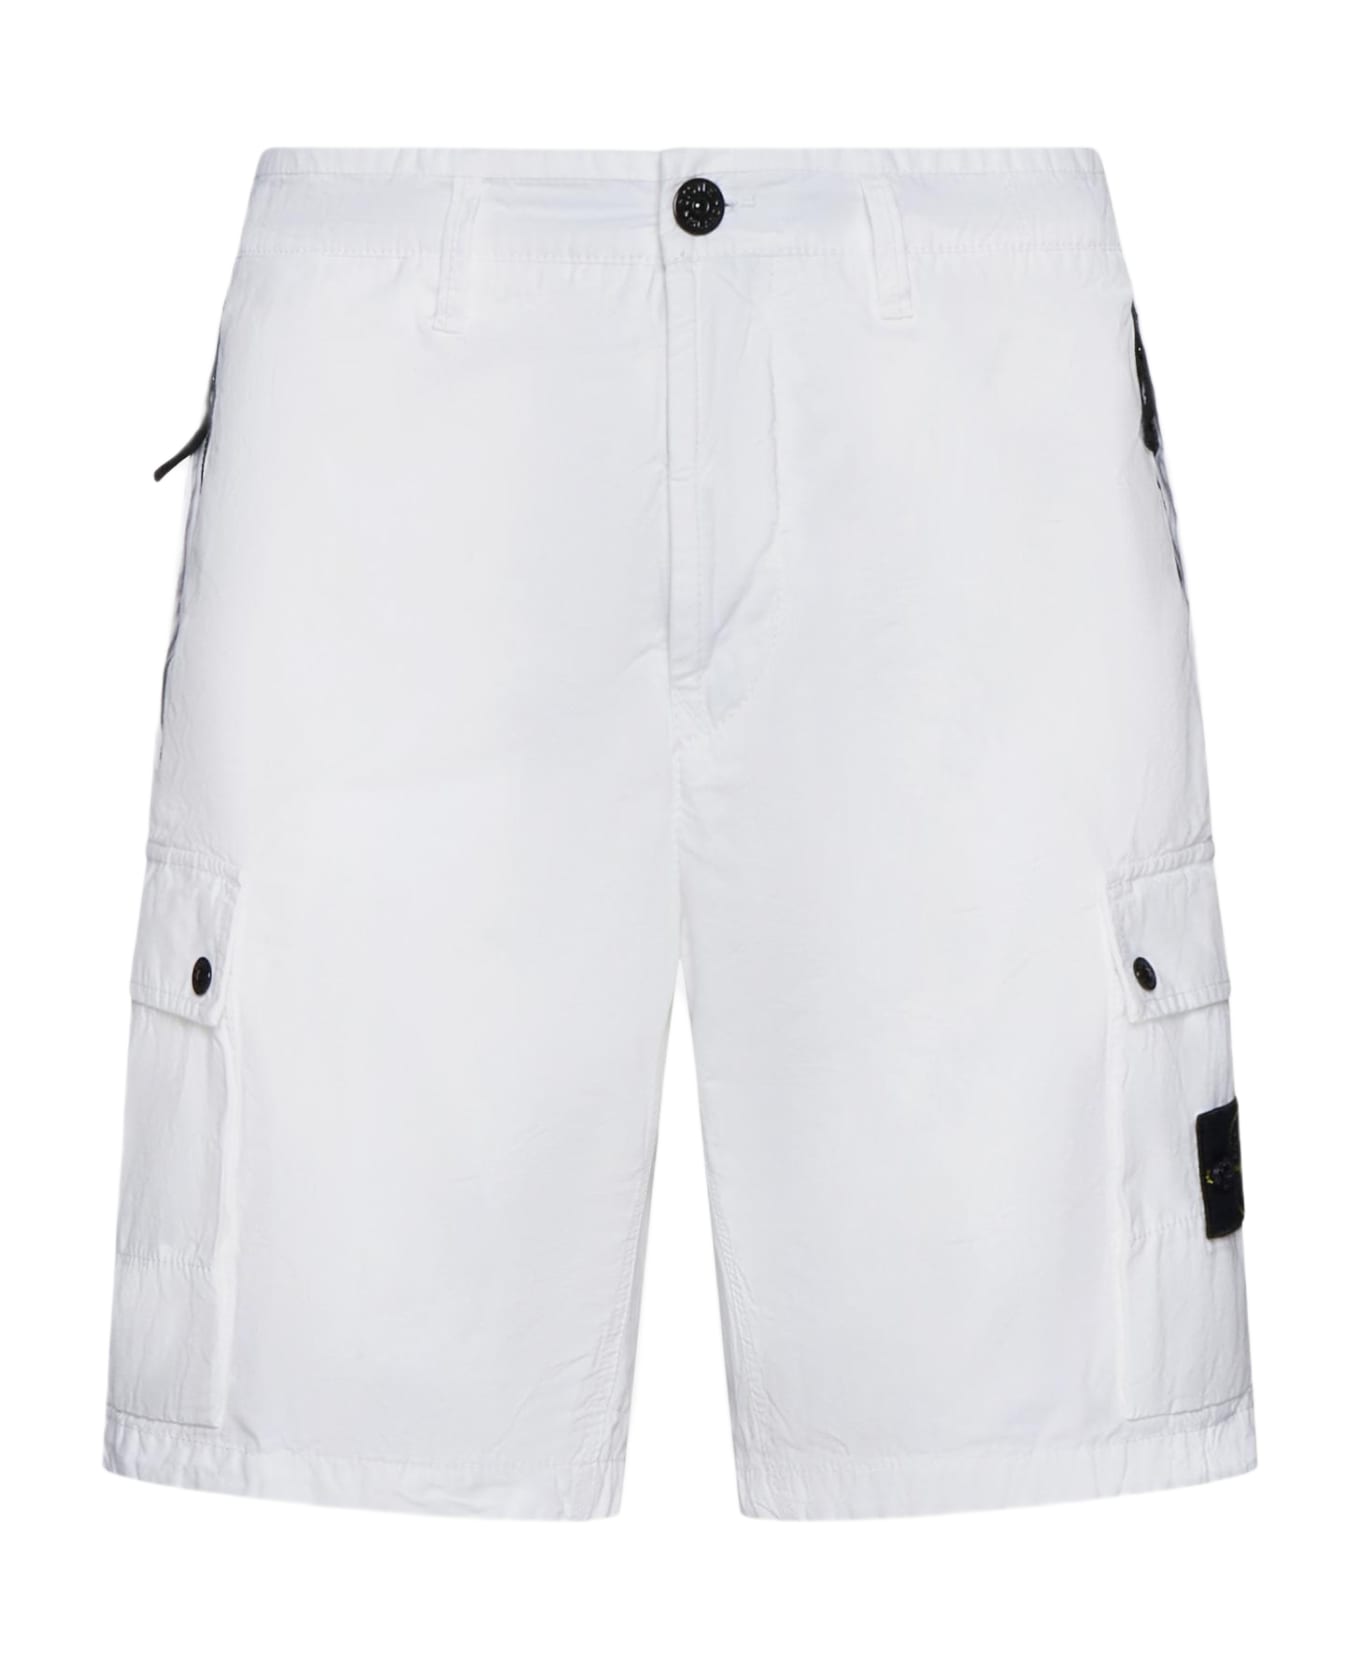 Stone Island Bermuda Shorts In Cotton Canvas L11wa - BIANCO